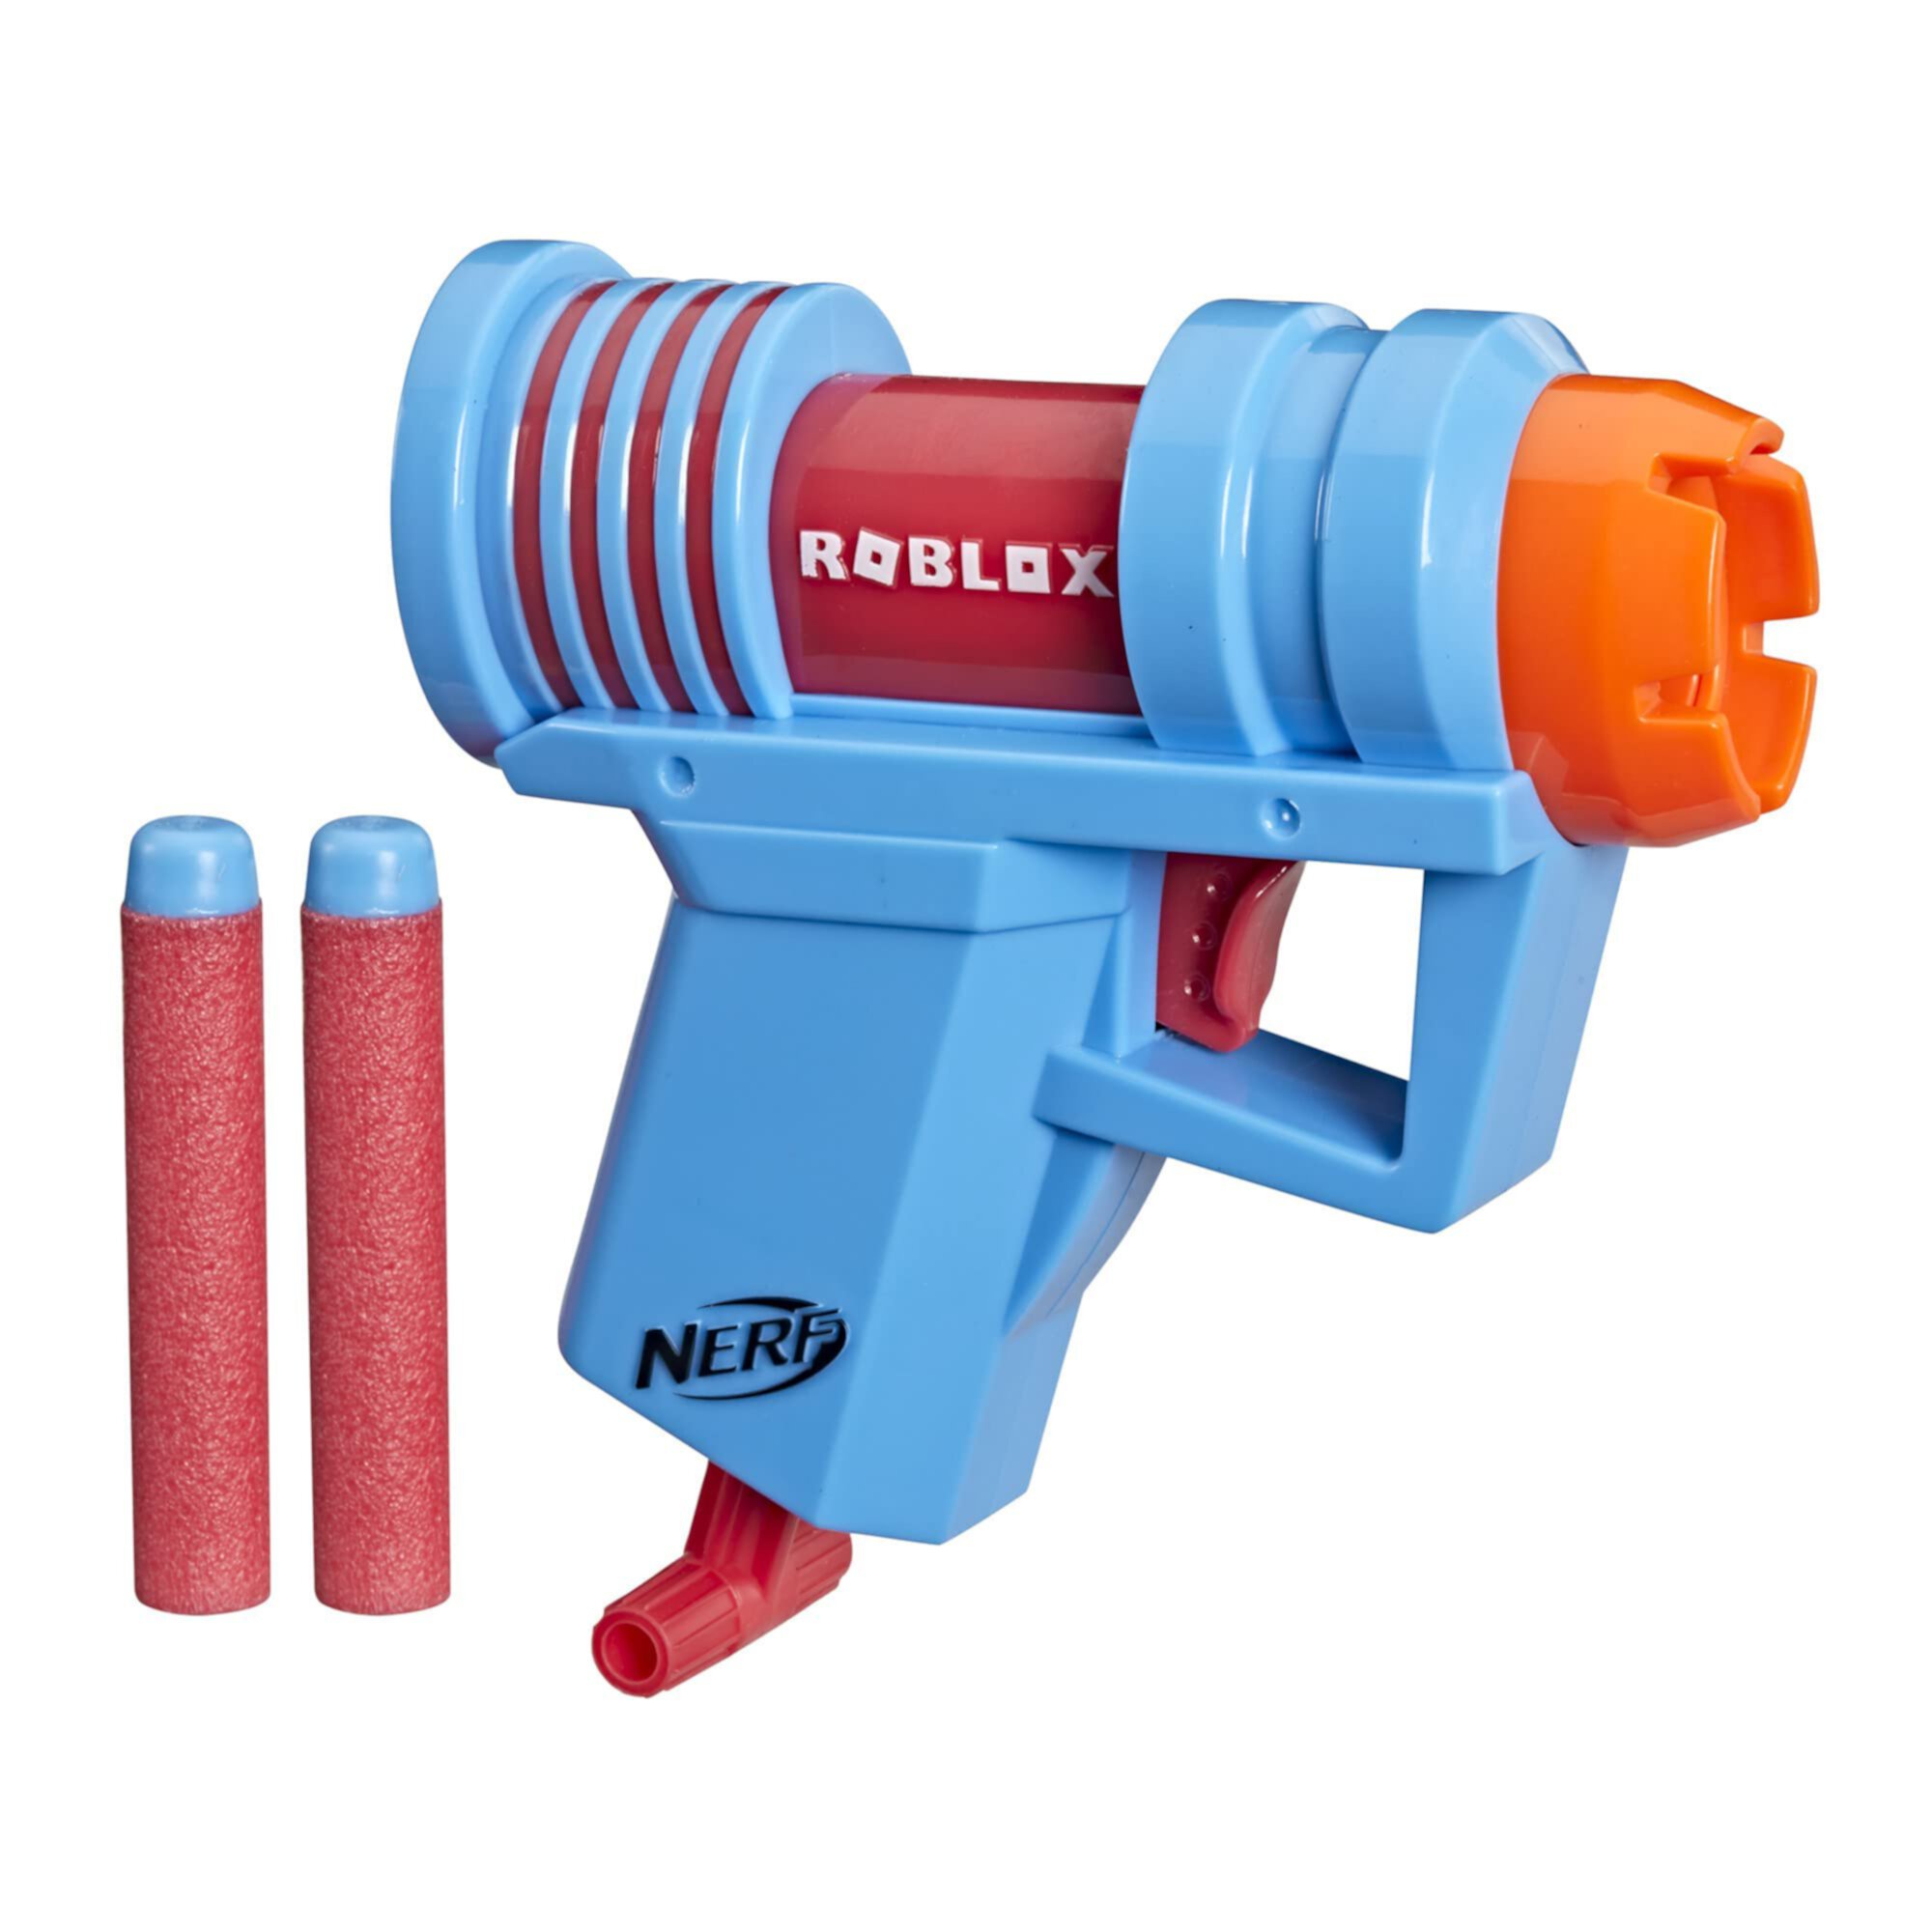 NERF Roblox Mad City: бластер Plasma Ray Dart Blaster, выдвижная заправочная рукоятка, 2 элитных дротика, код для разблокировки виртуального предмета в игре Nerf